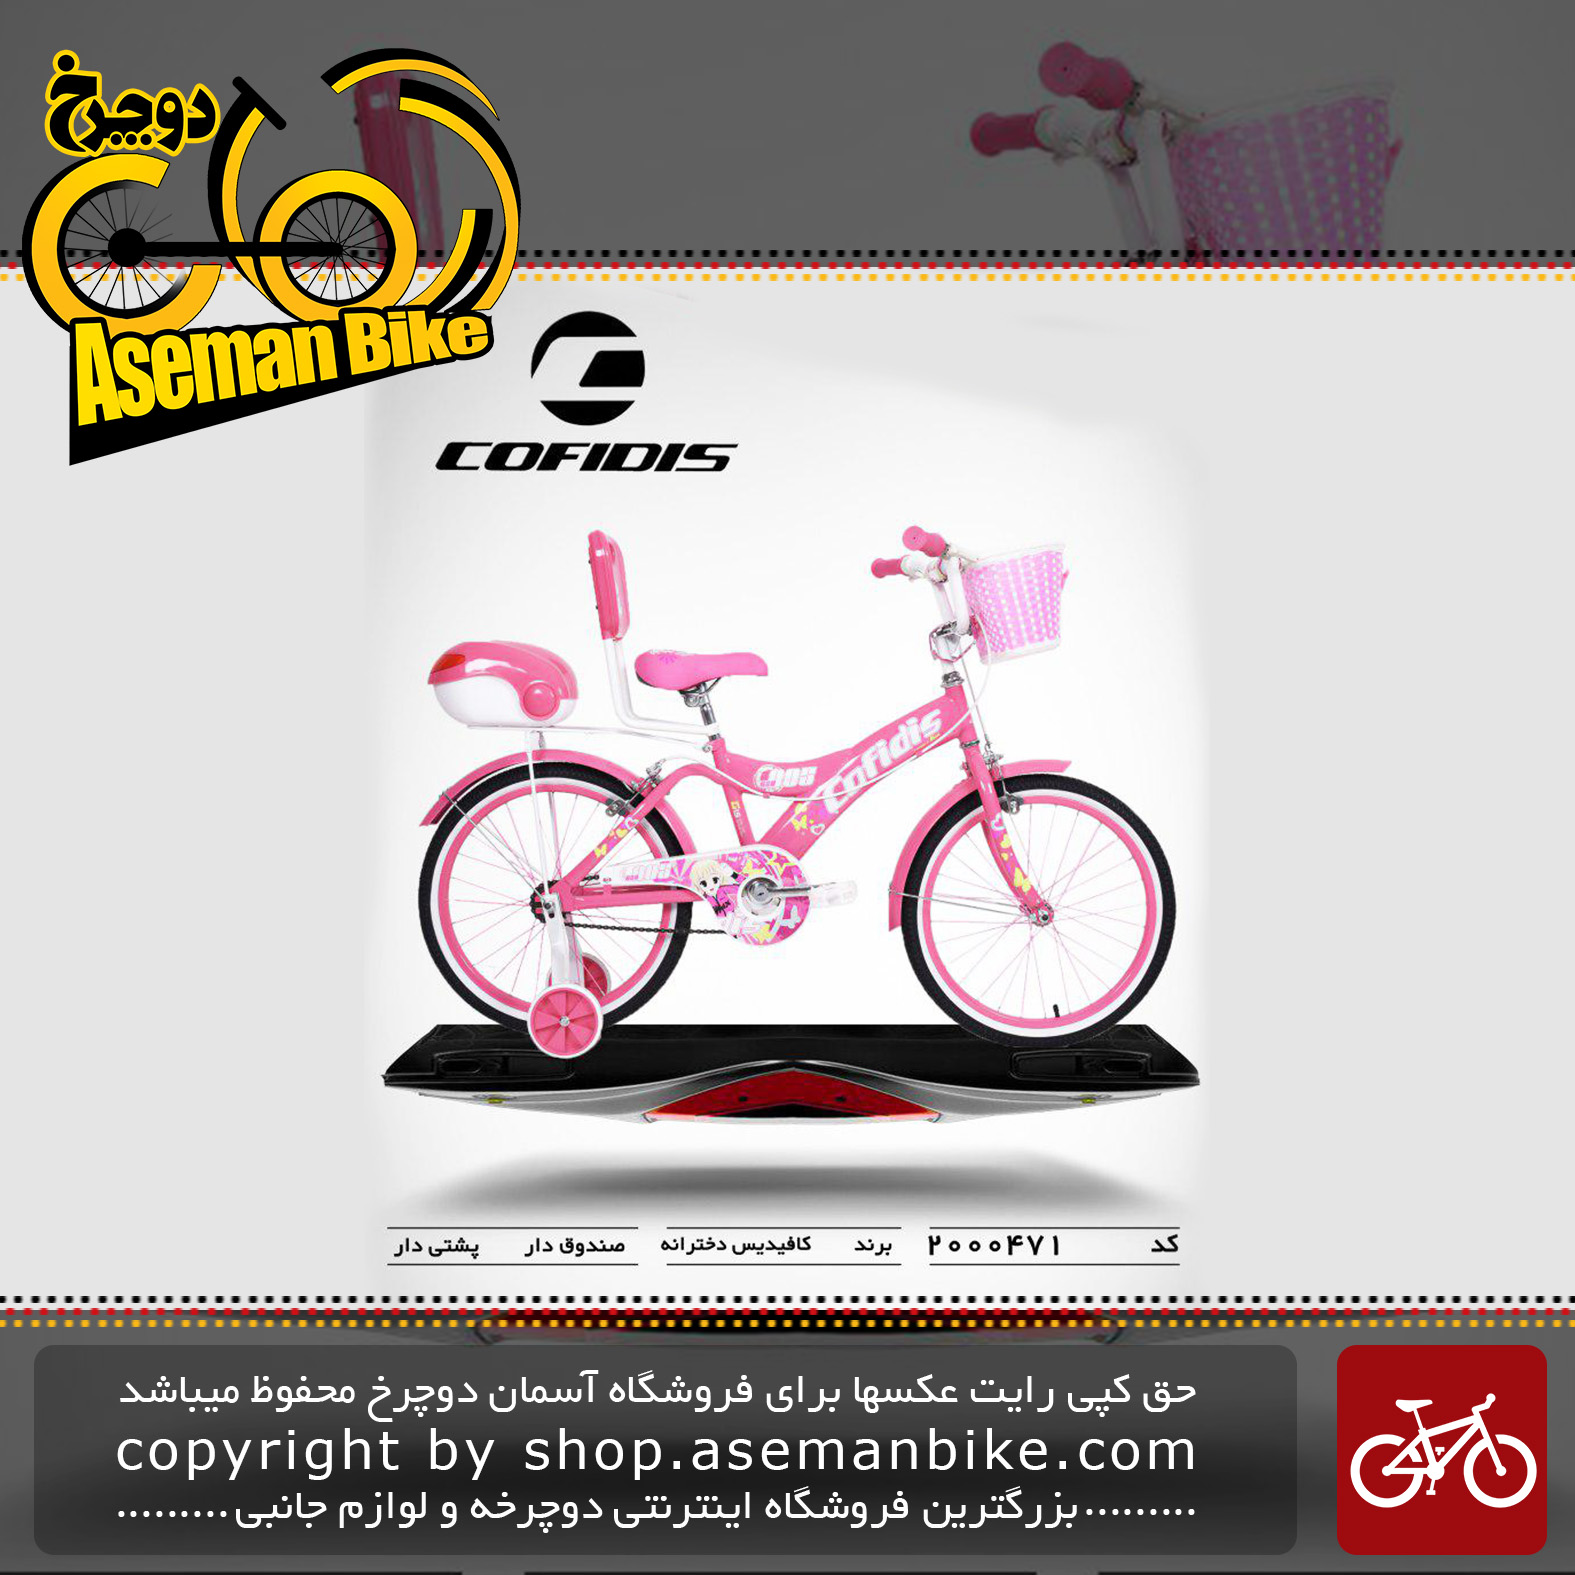 دوچرخه کافیدیس تایوان دخترانه صندوق و سبد دار مدل 471 سایز 20 COFIDIS Bicycle 471 Size 20 2019